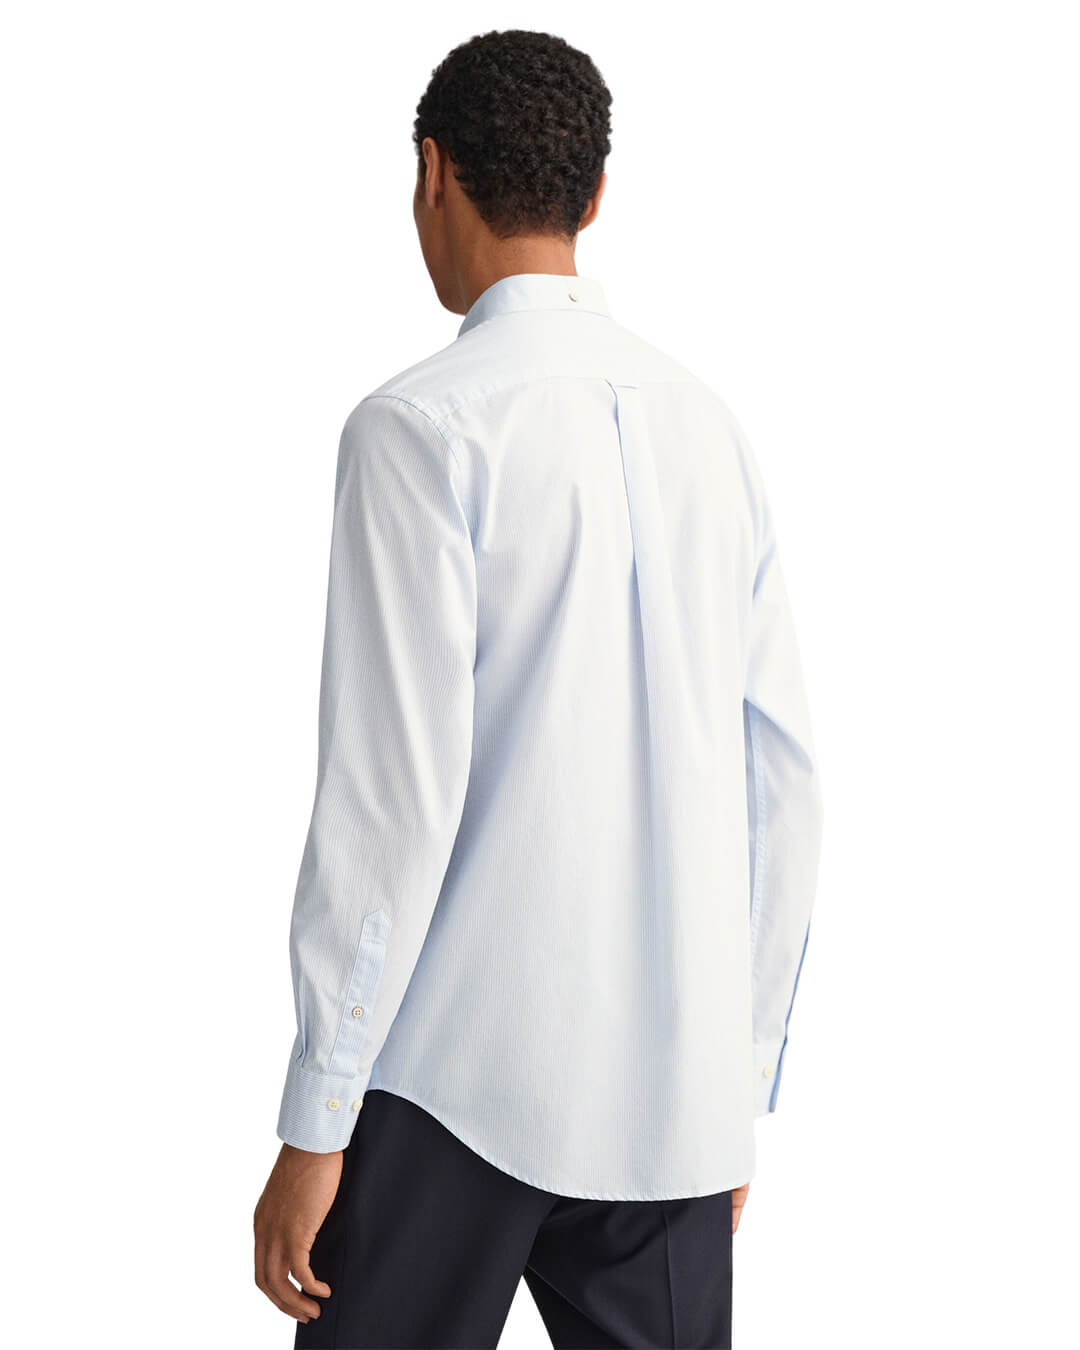 Gant Shirts Gant Regular Fit Banker Broadcloth Blue Shirt